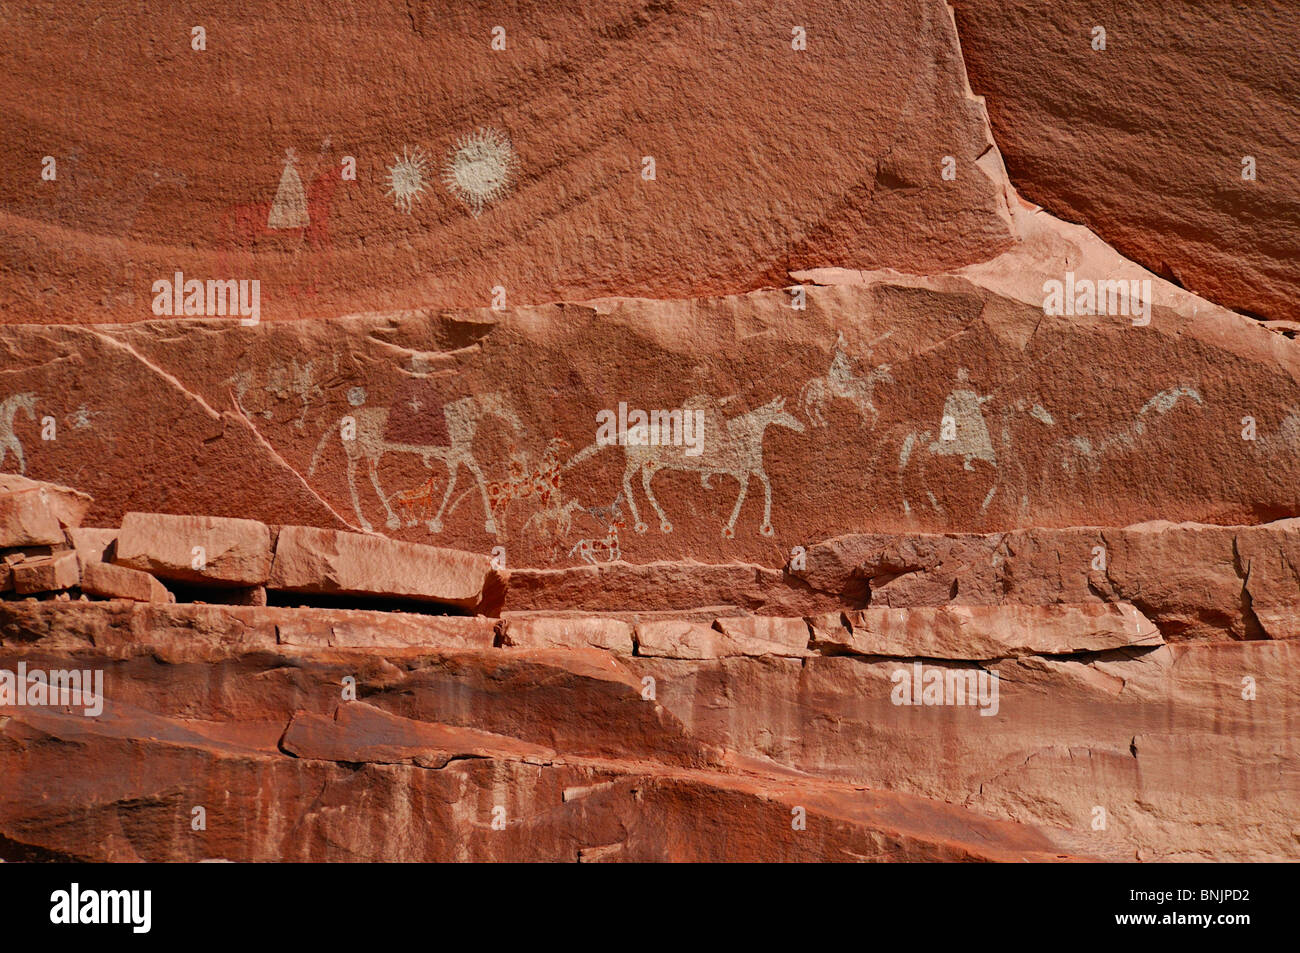 Spanische Reiter Piktogramm Canyon del Muerto Canyon de Chelly National Monument Arizona USA Nordamerika Reisen Stein Stockfoto